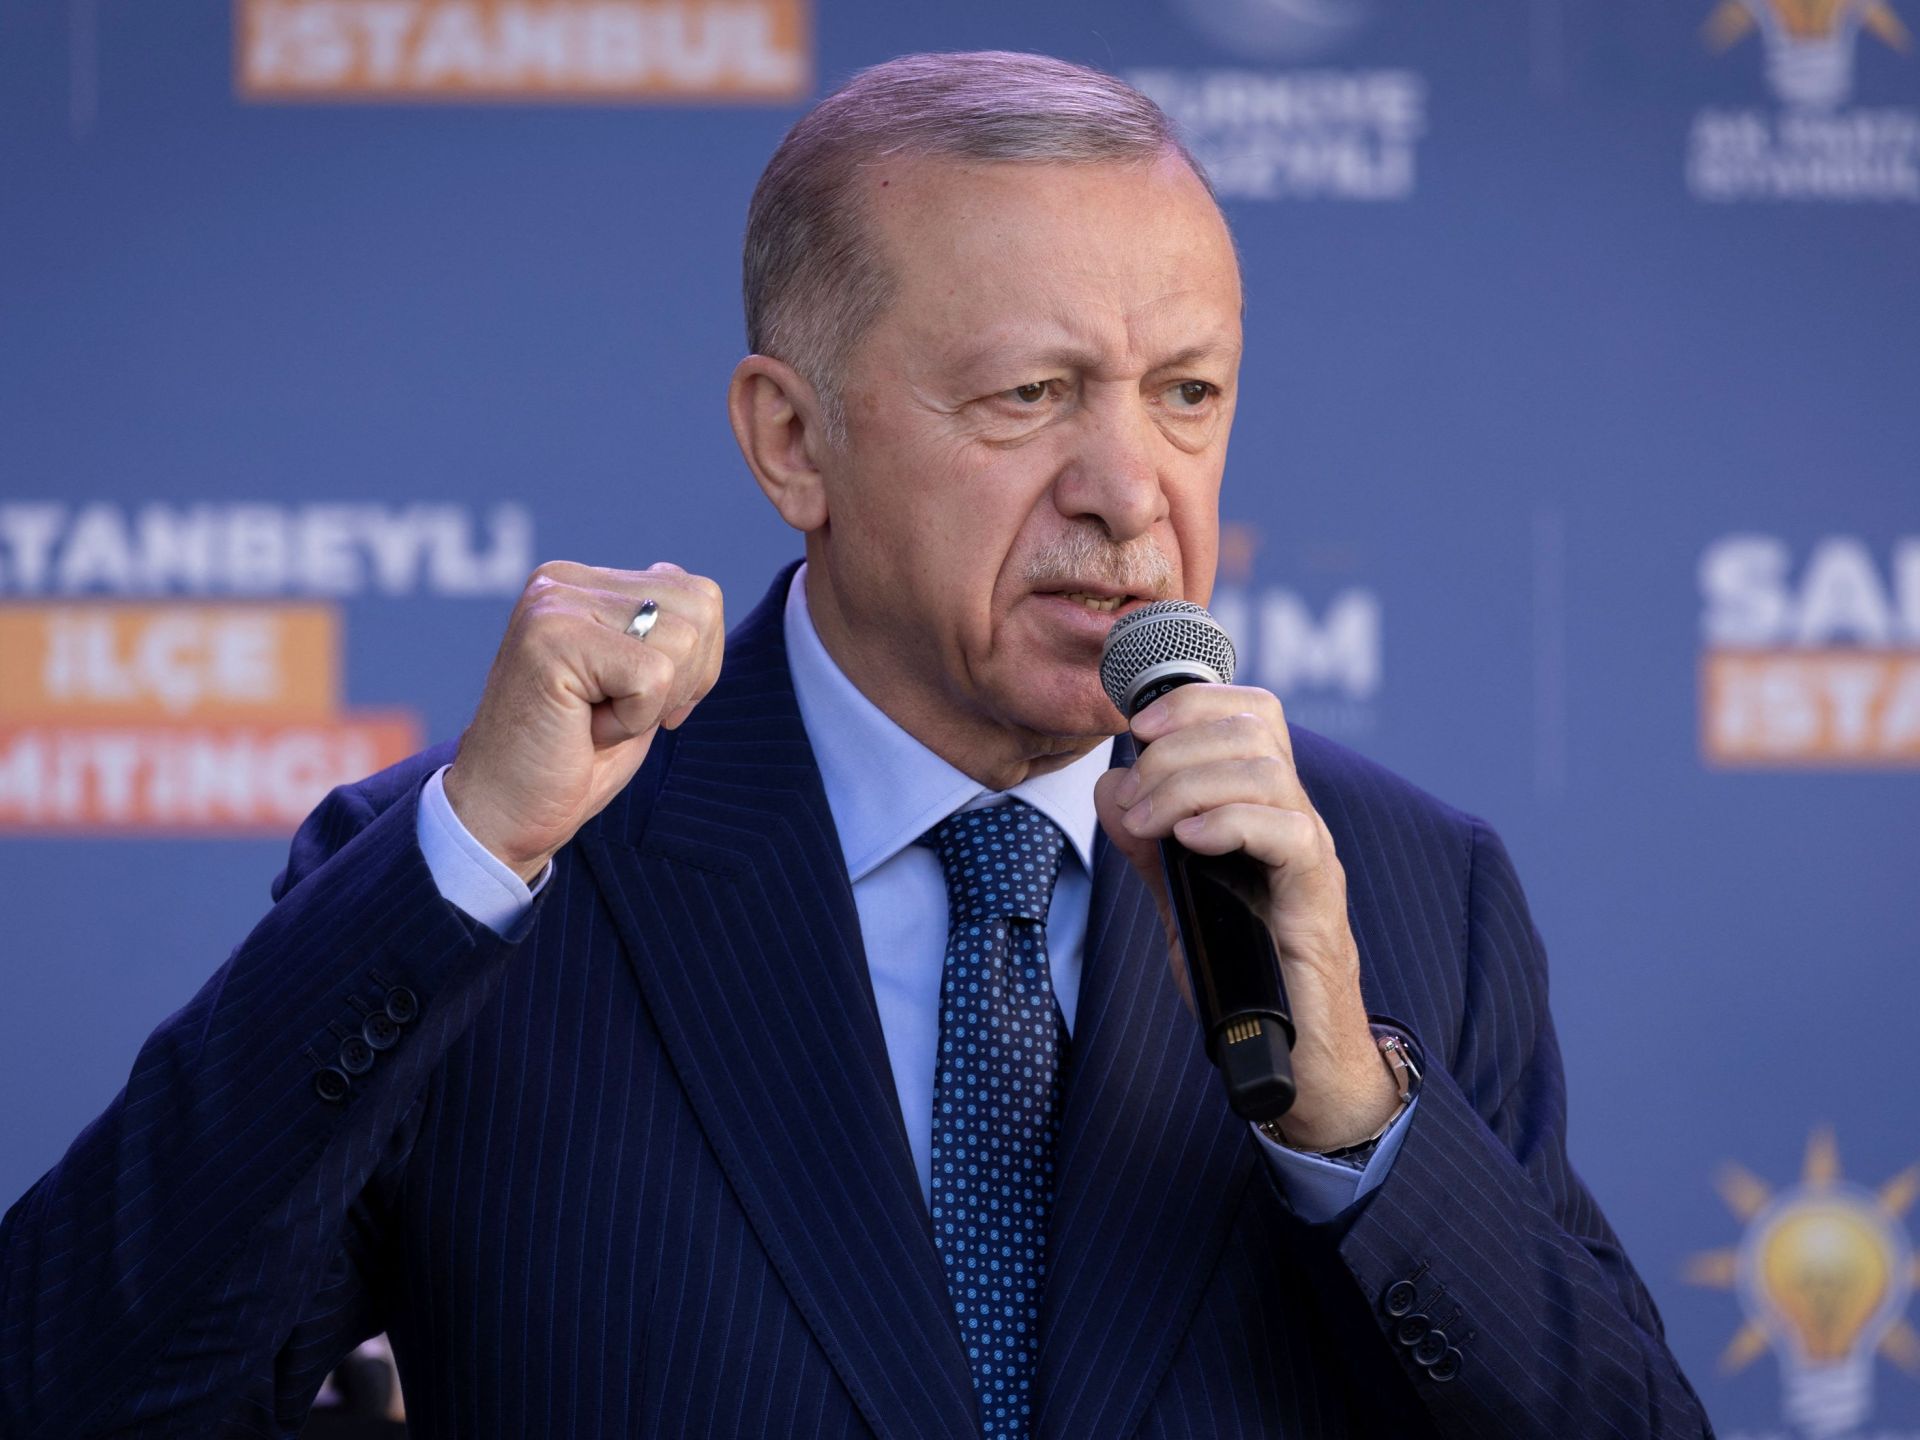 تركيا تفرض قيودا تجارية على إسرائيل وتوقف تصدير 54 منتجا إليها | أخبار – البوكس نيوز